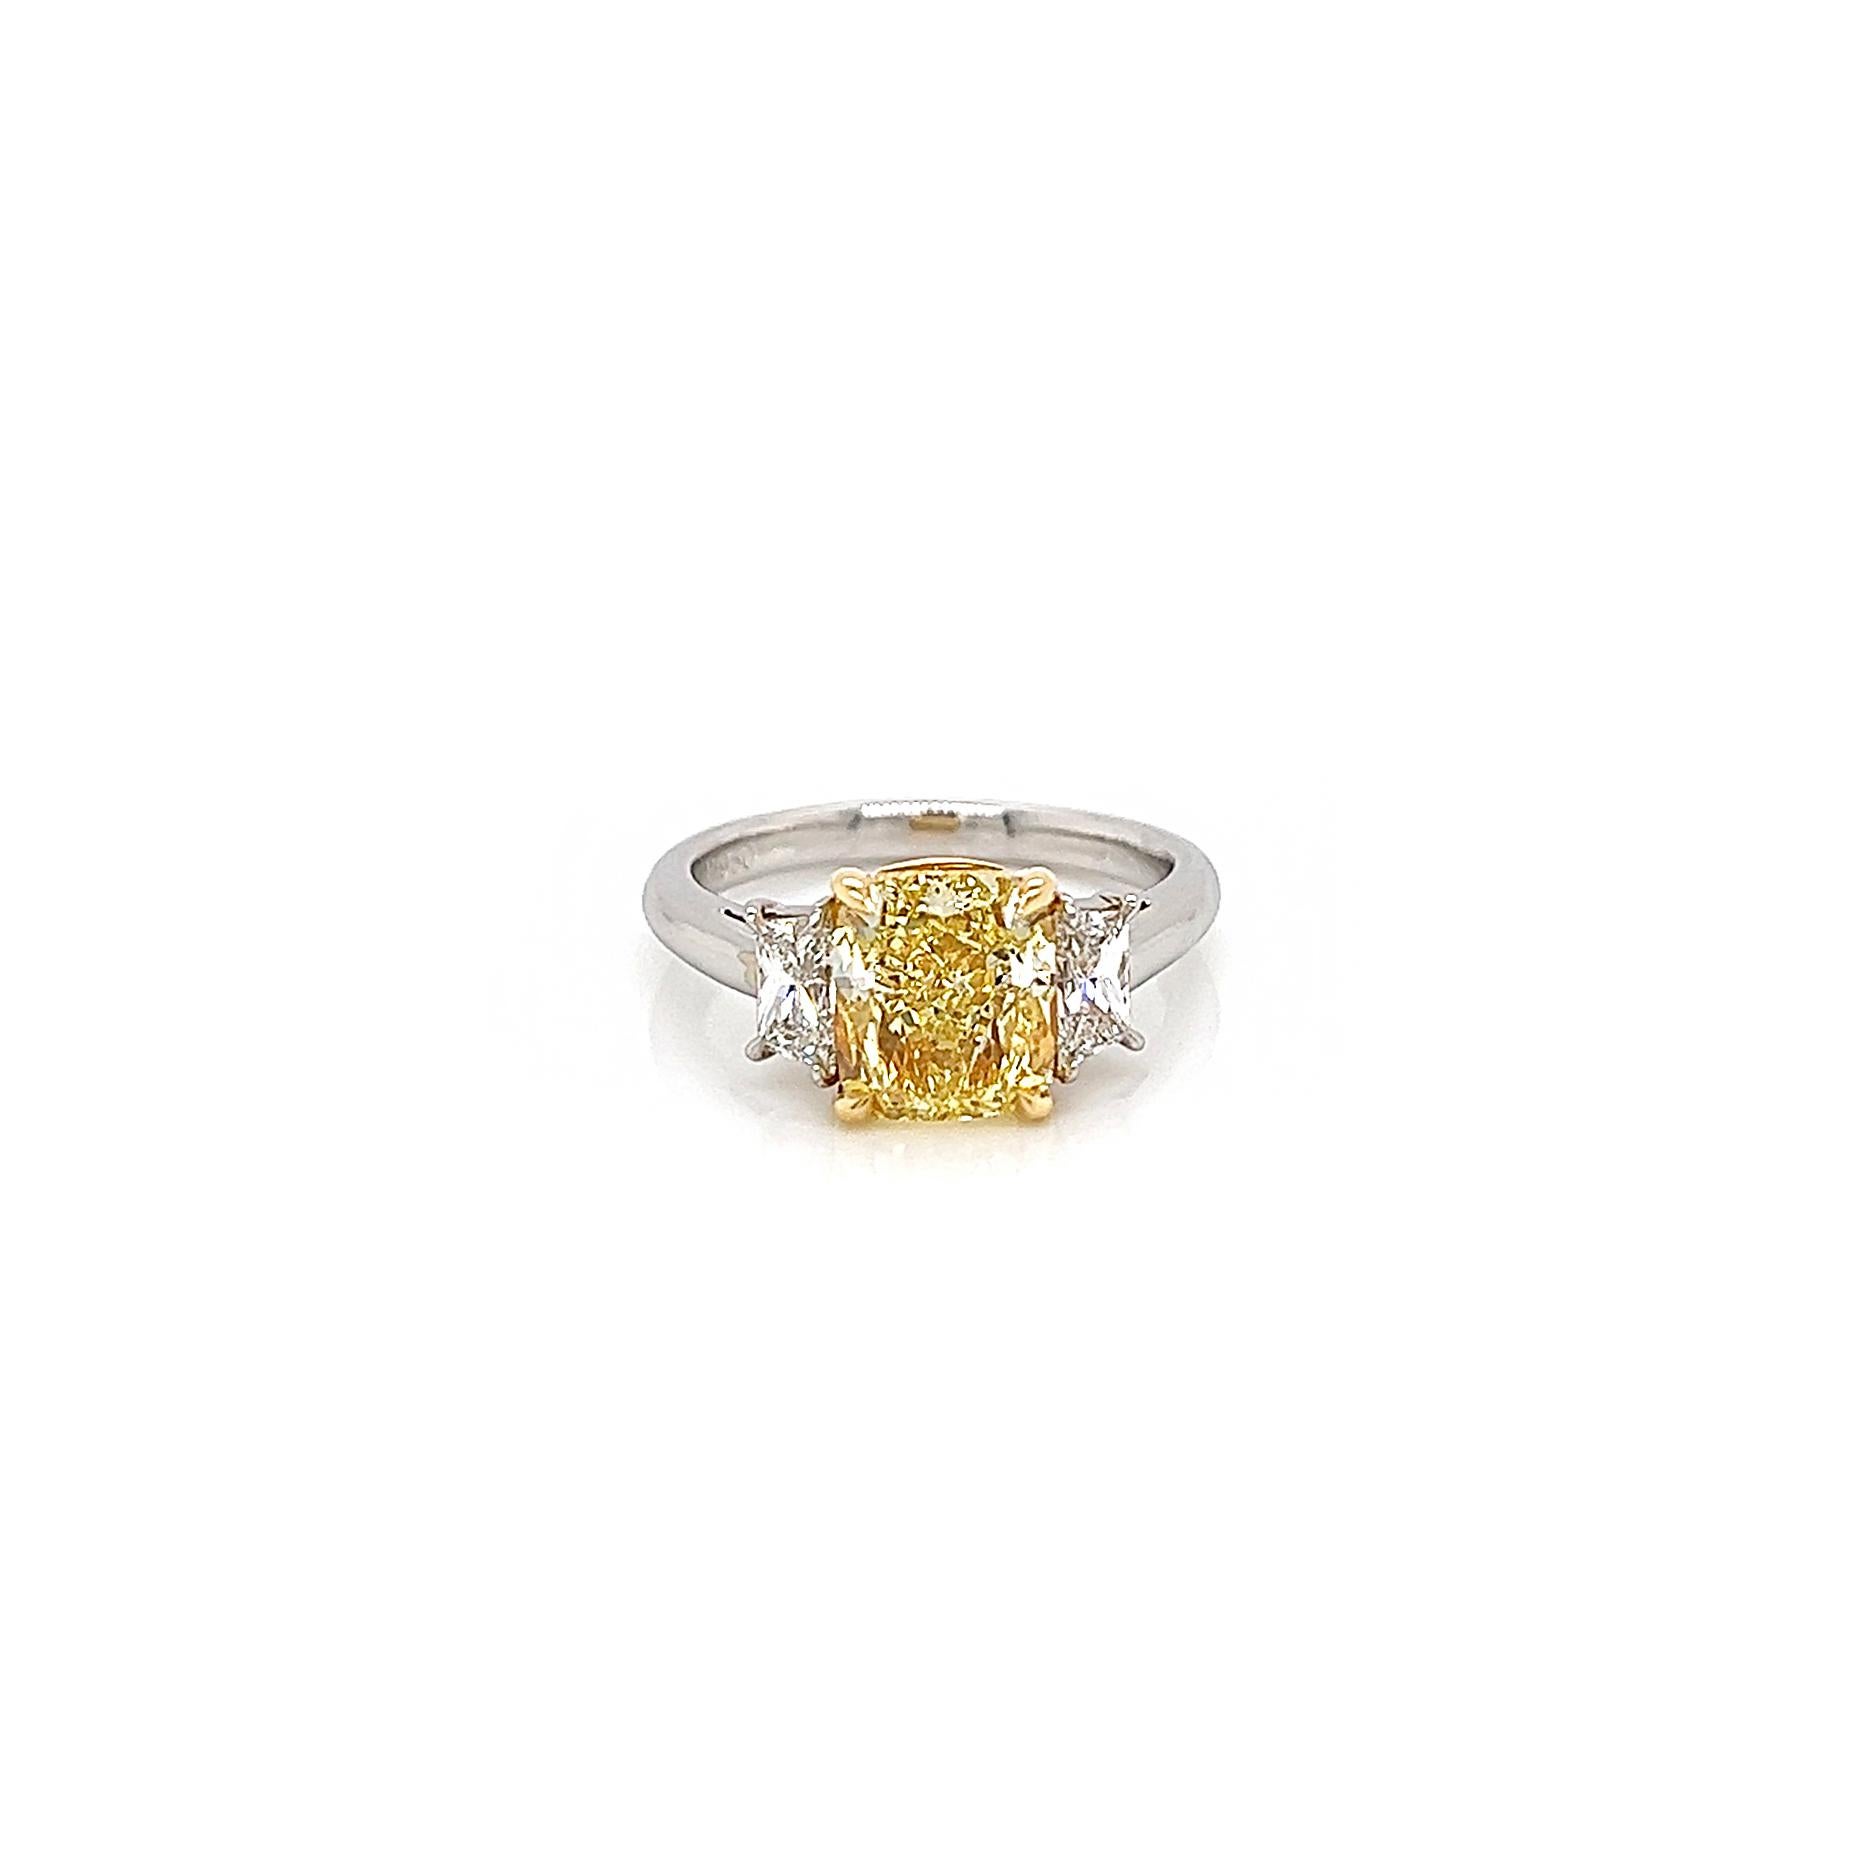 3.61 Total Carat Fancy Yellow Diamond Three-Stone Ladies Engagement Ring. GIA-zertifiziert.

Platin drei Stein fancy Diamant Verlobungsring mit einem erstaunlichen fancy gelben Zentrum Diamant gefertigt. So selten und so schön, dass man oft sieht,